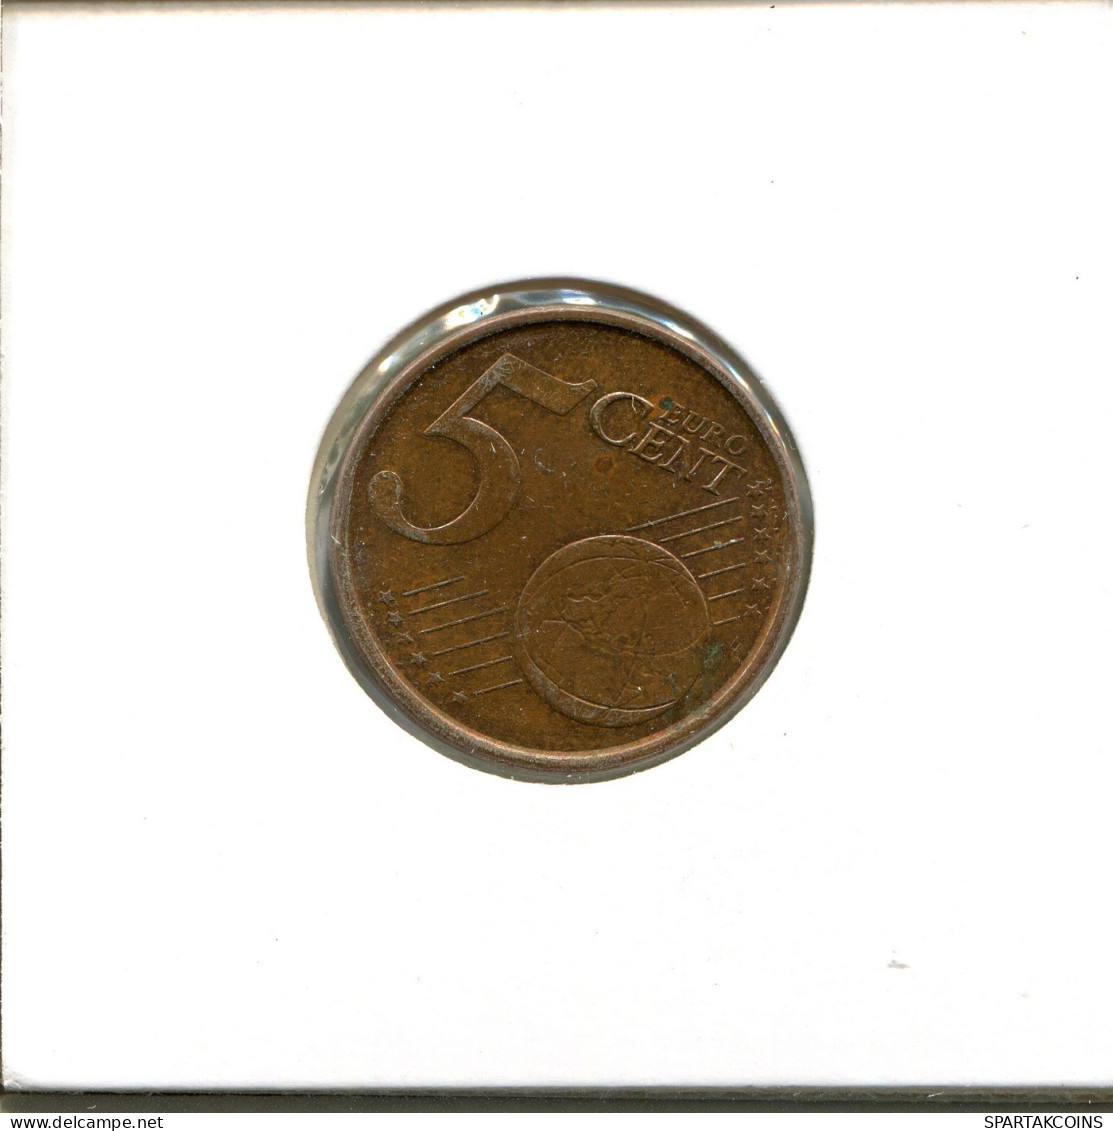 5 EURO CENTS 2004 SPAIN Coin #EU567.U.A - Spain